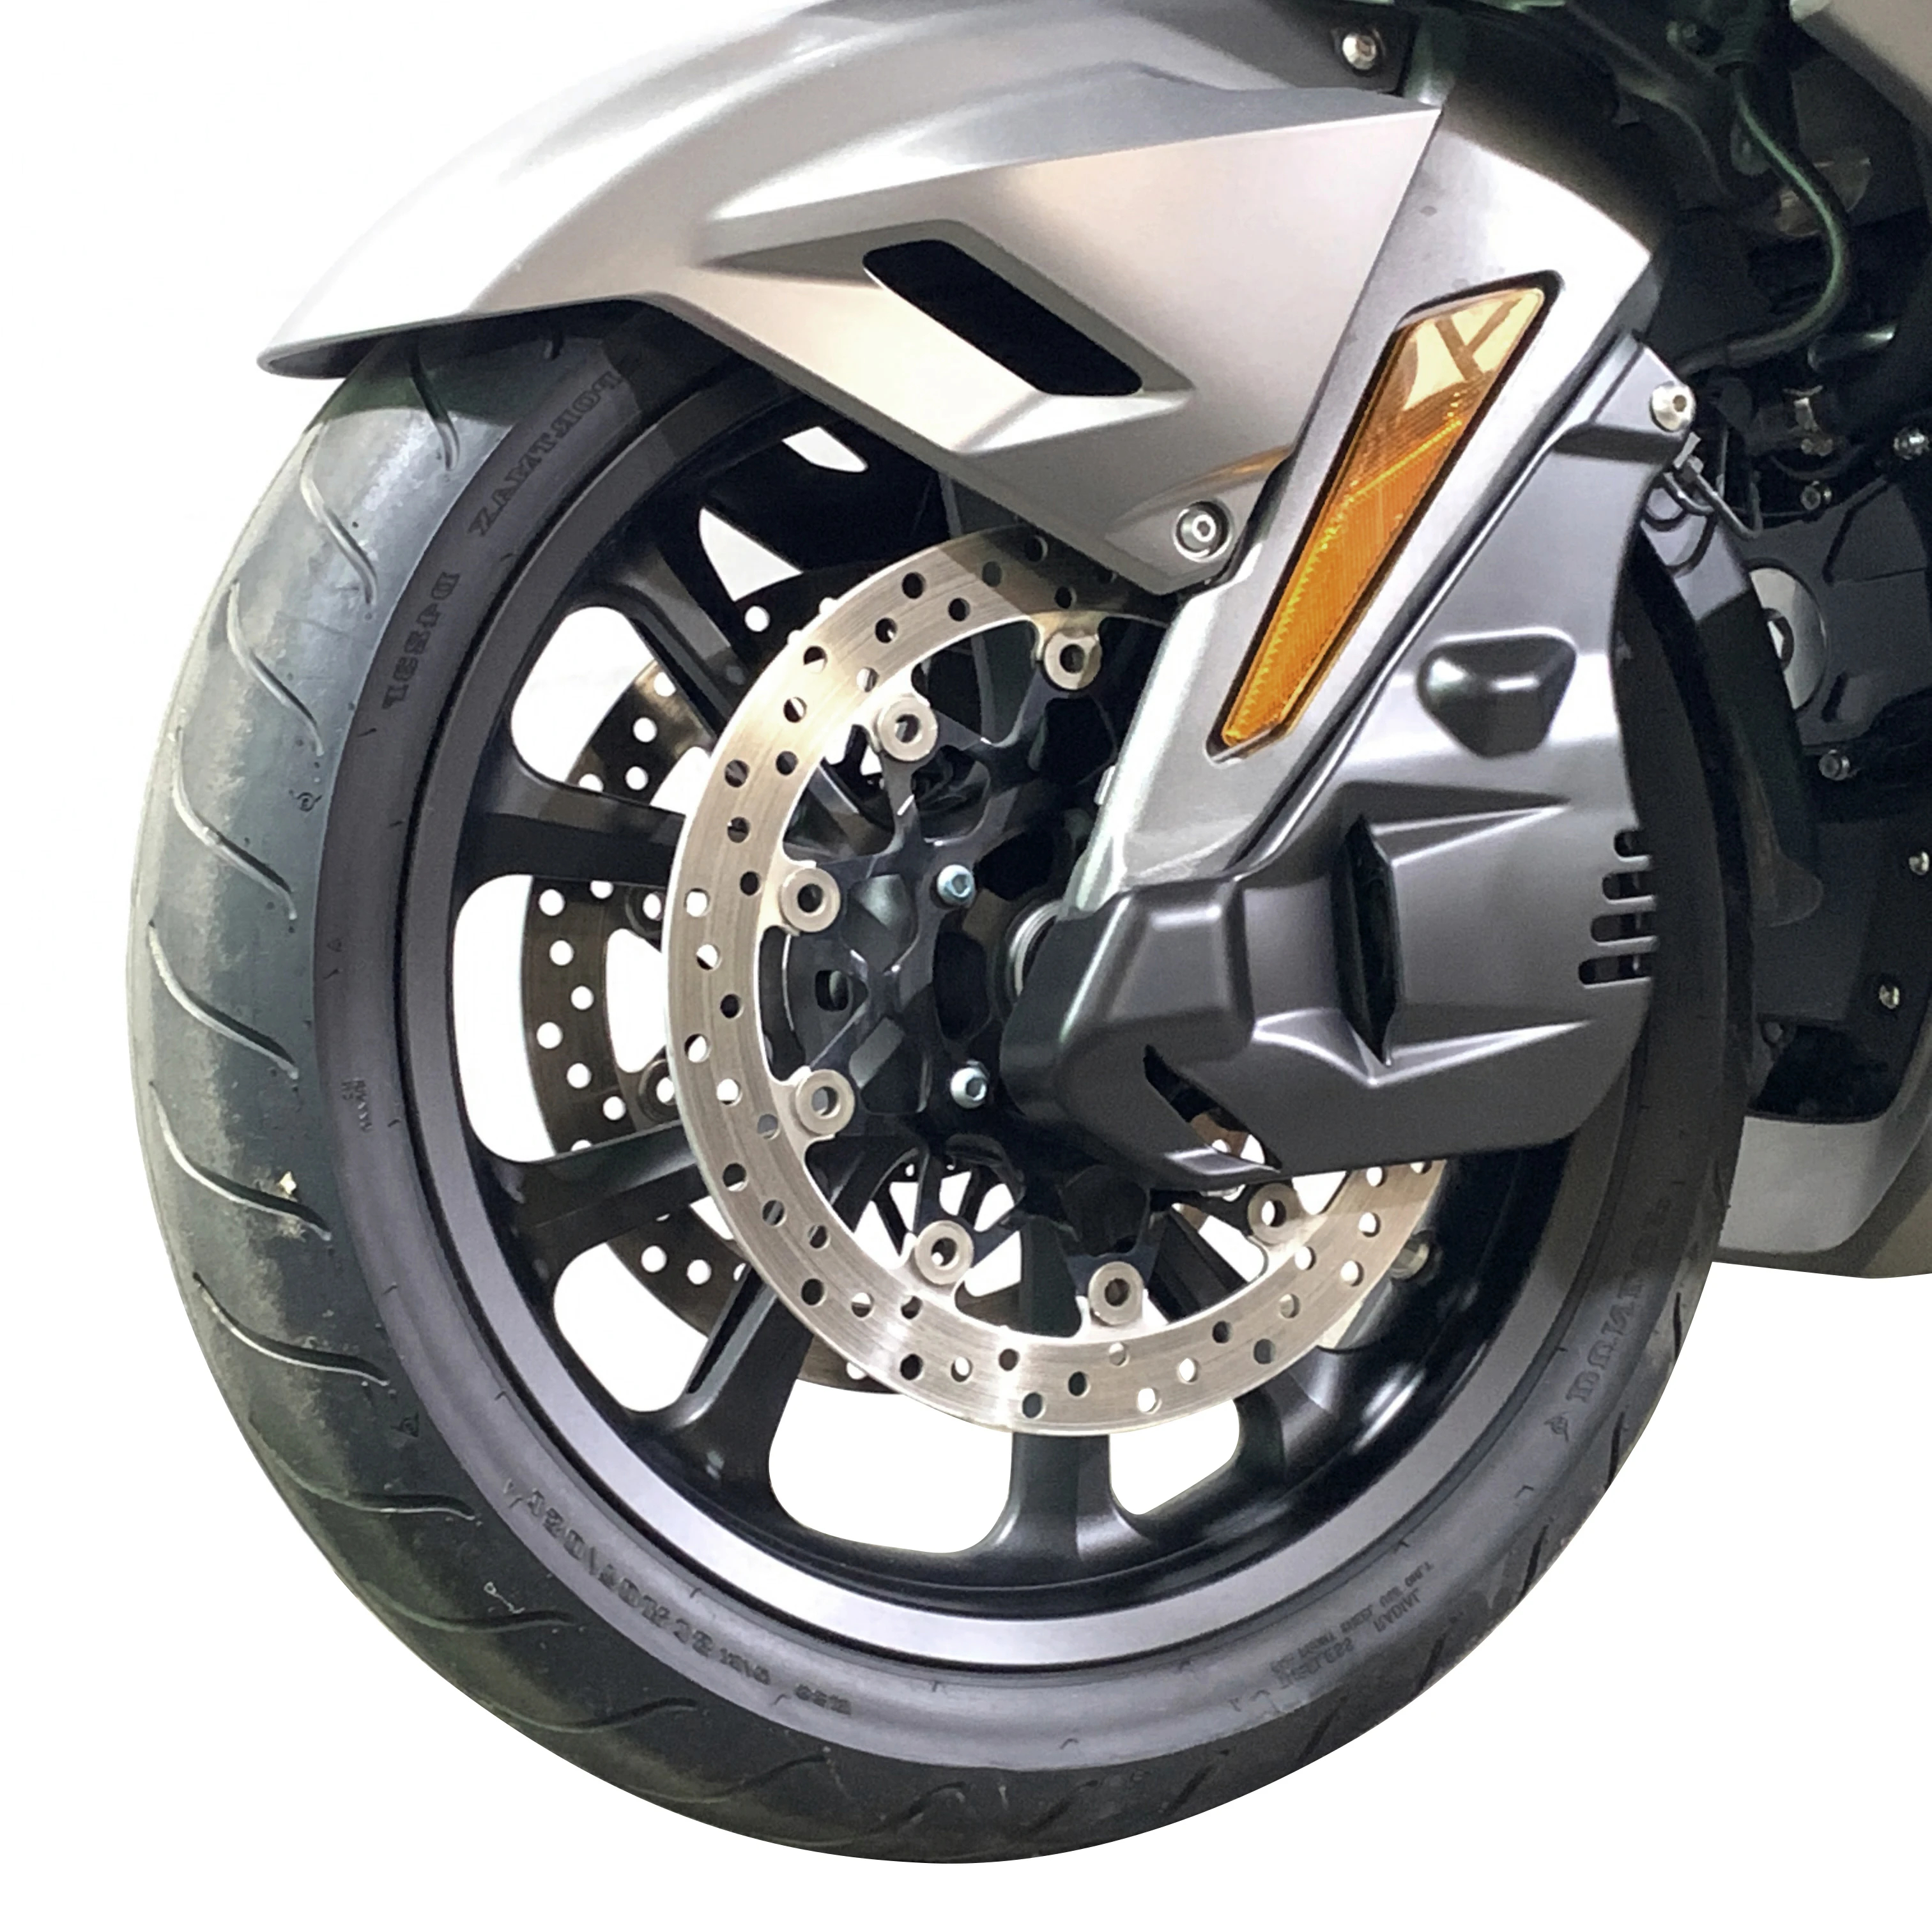 

Передний тормозной суппорт для мотоцикла, декоративная крышка для Honda Gold Wing GL1800 GL1800B F6B 2018-2021, хромированный АБС-пластик